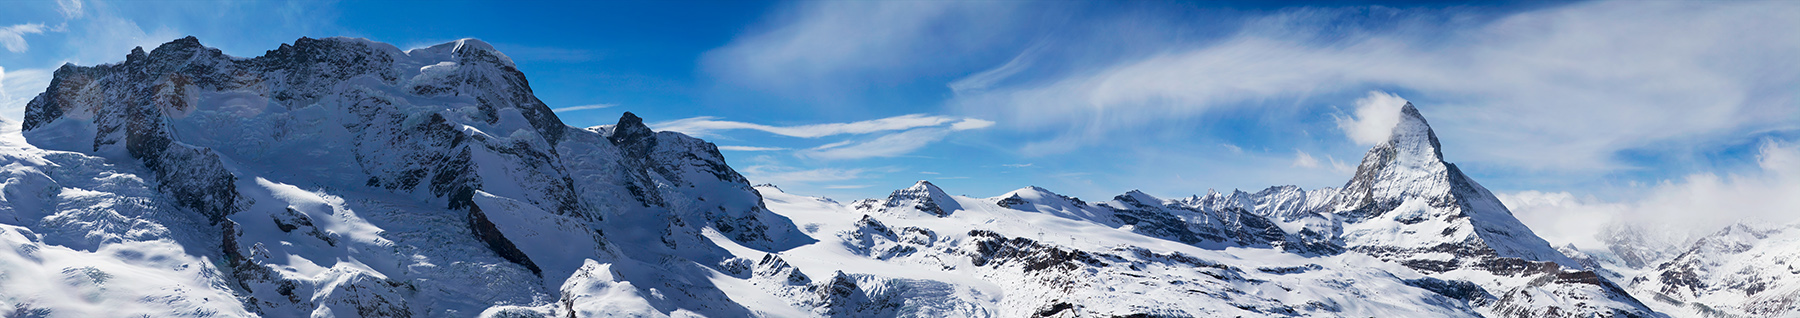 Matterhorn in Winter